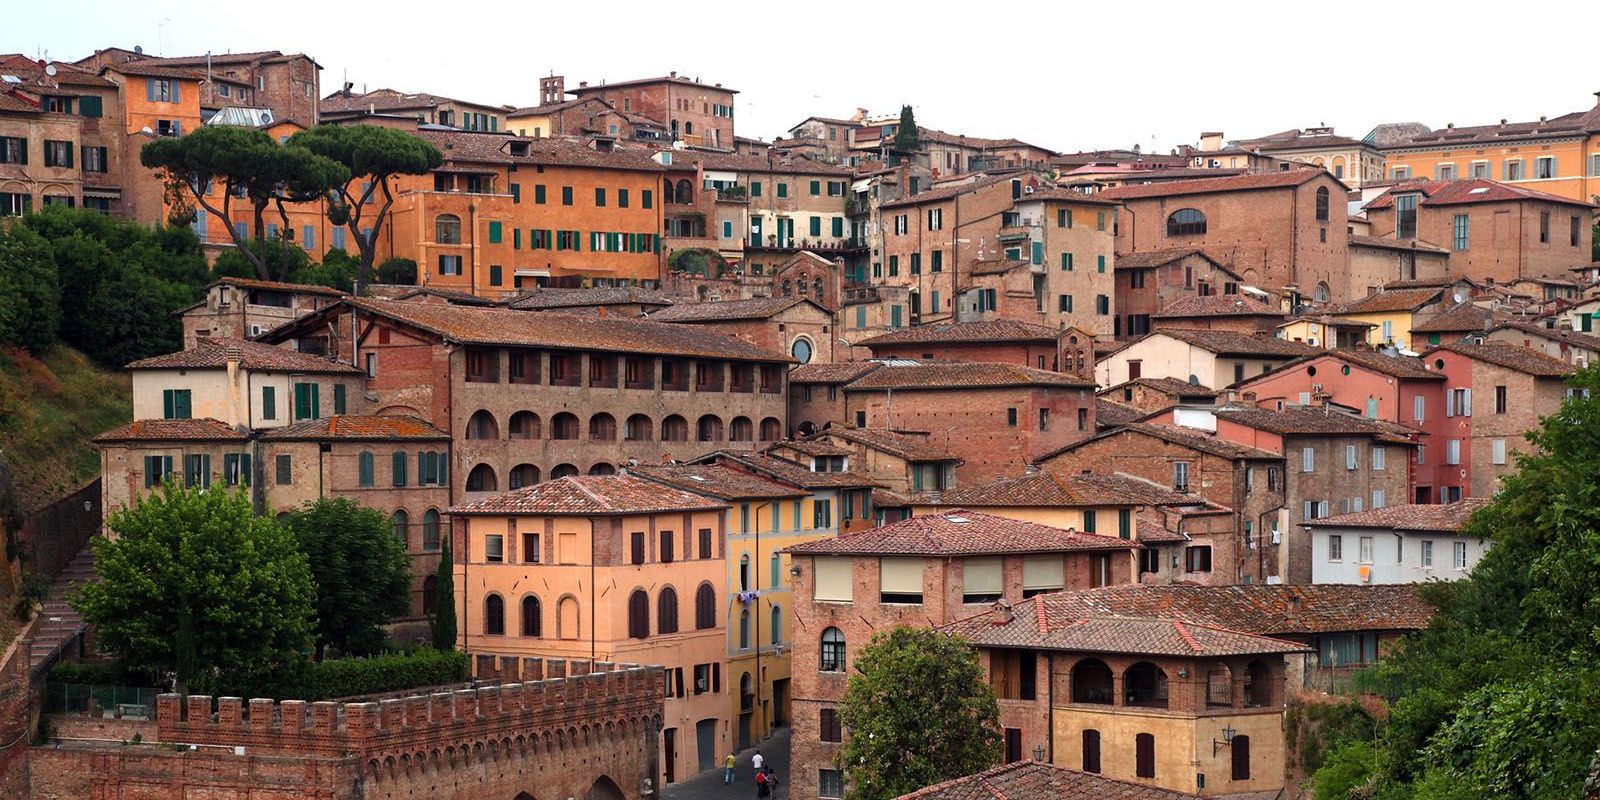 Siena: Il Cuore Artistico della Toscana